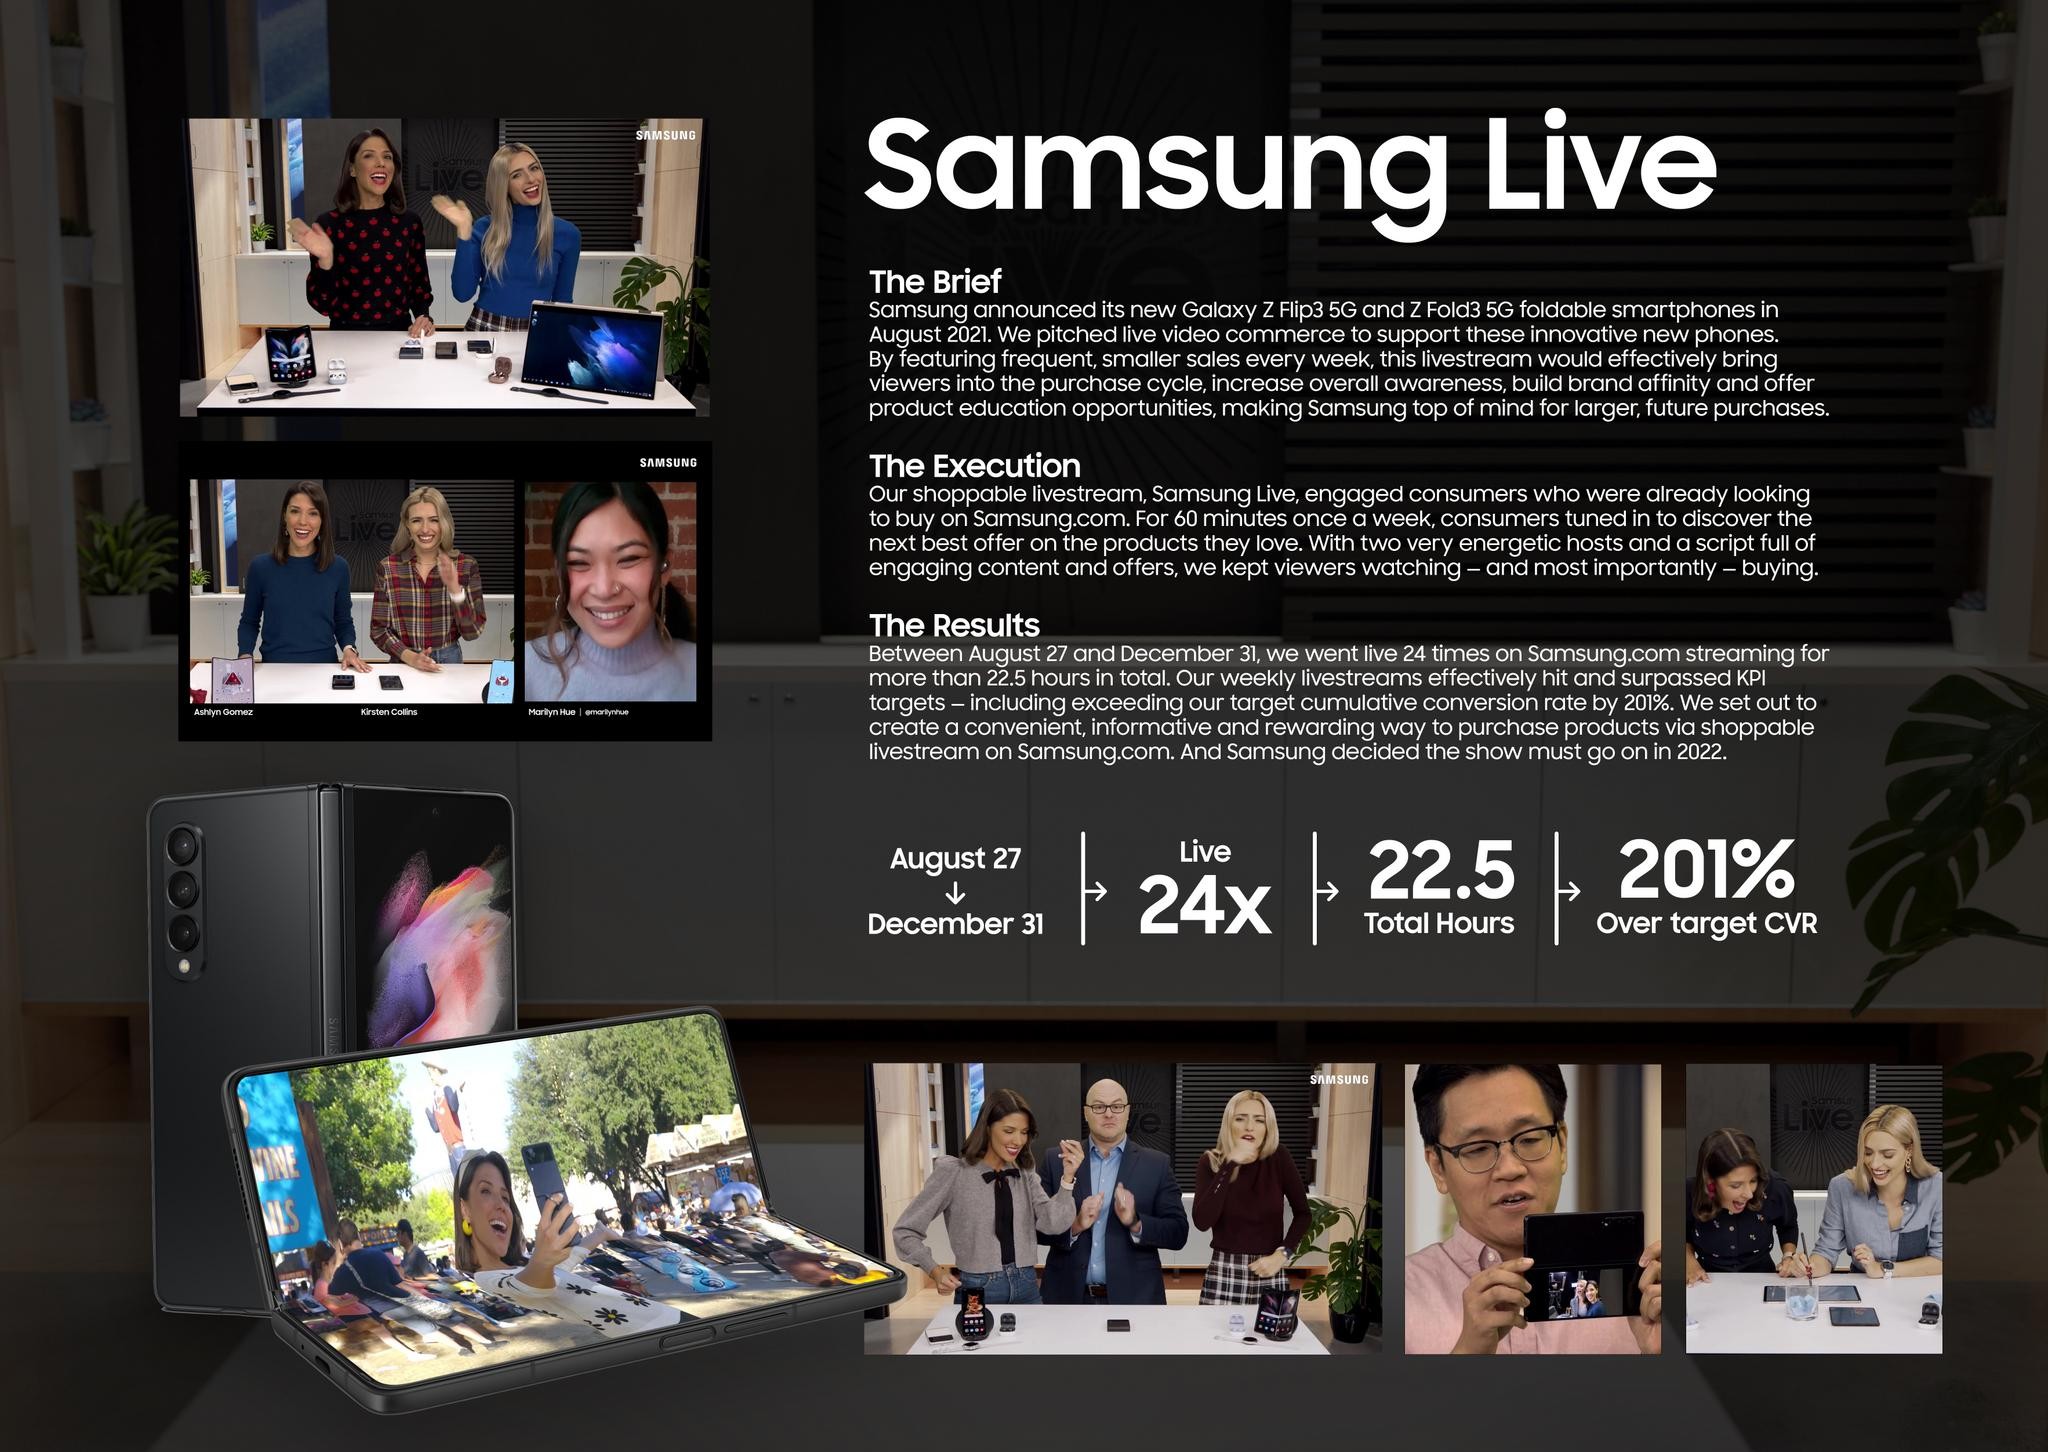 Samsung Live